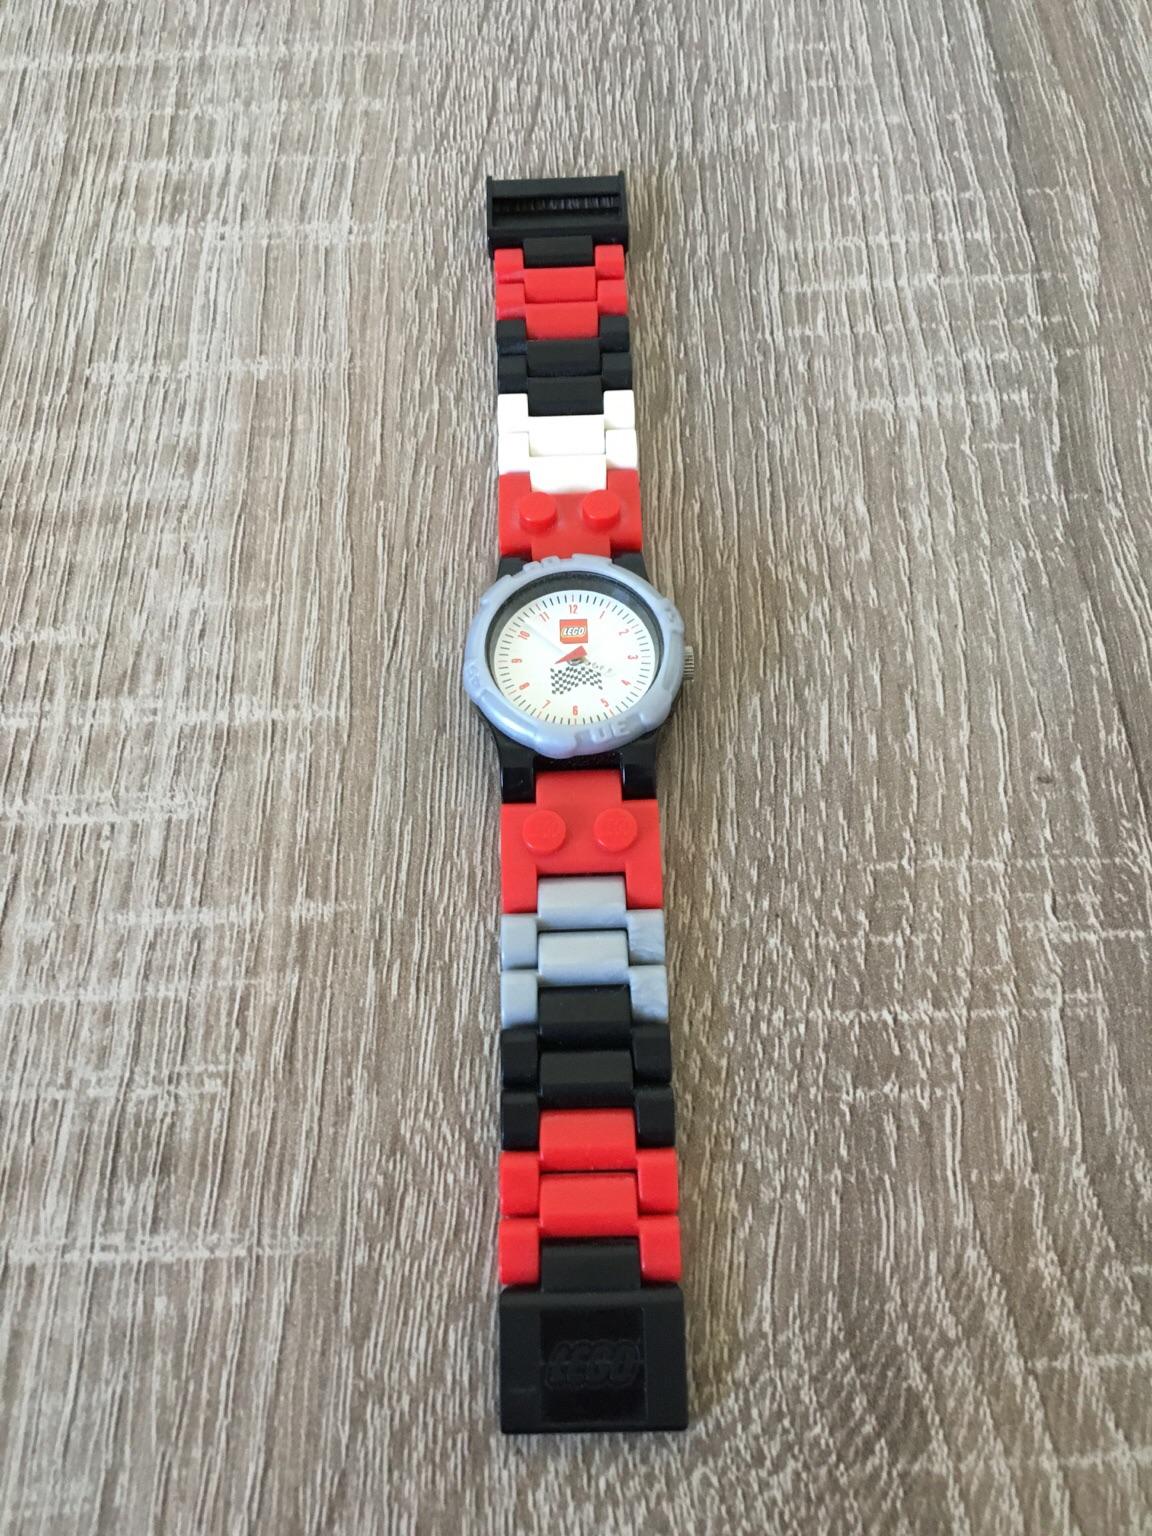 Lego Armbanduhr für Kinder in 06366 Köthen (Anhalt) für 10,00